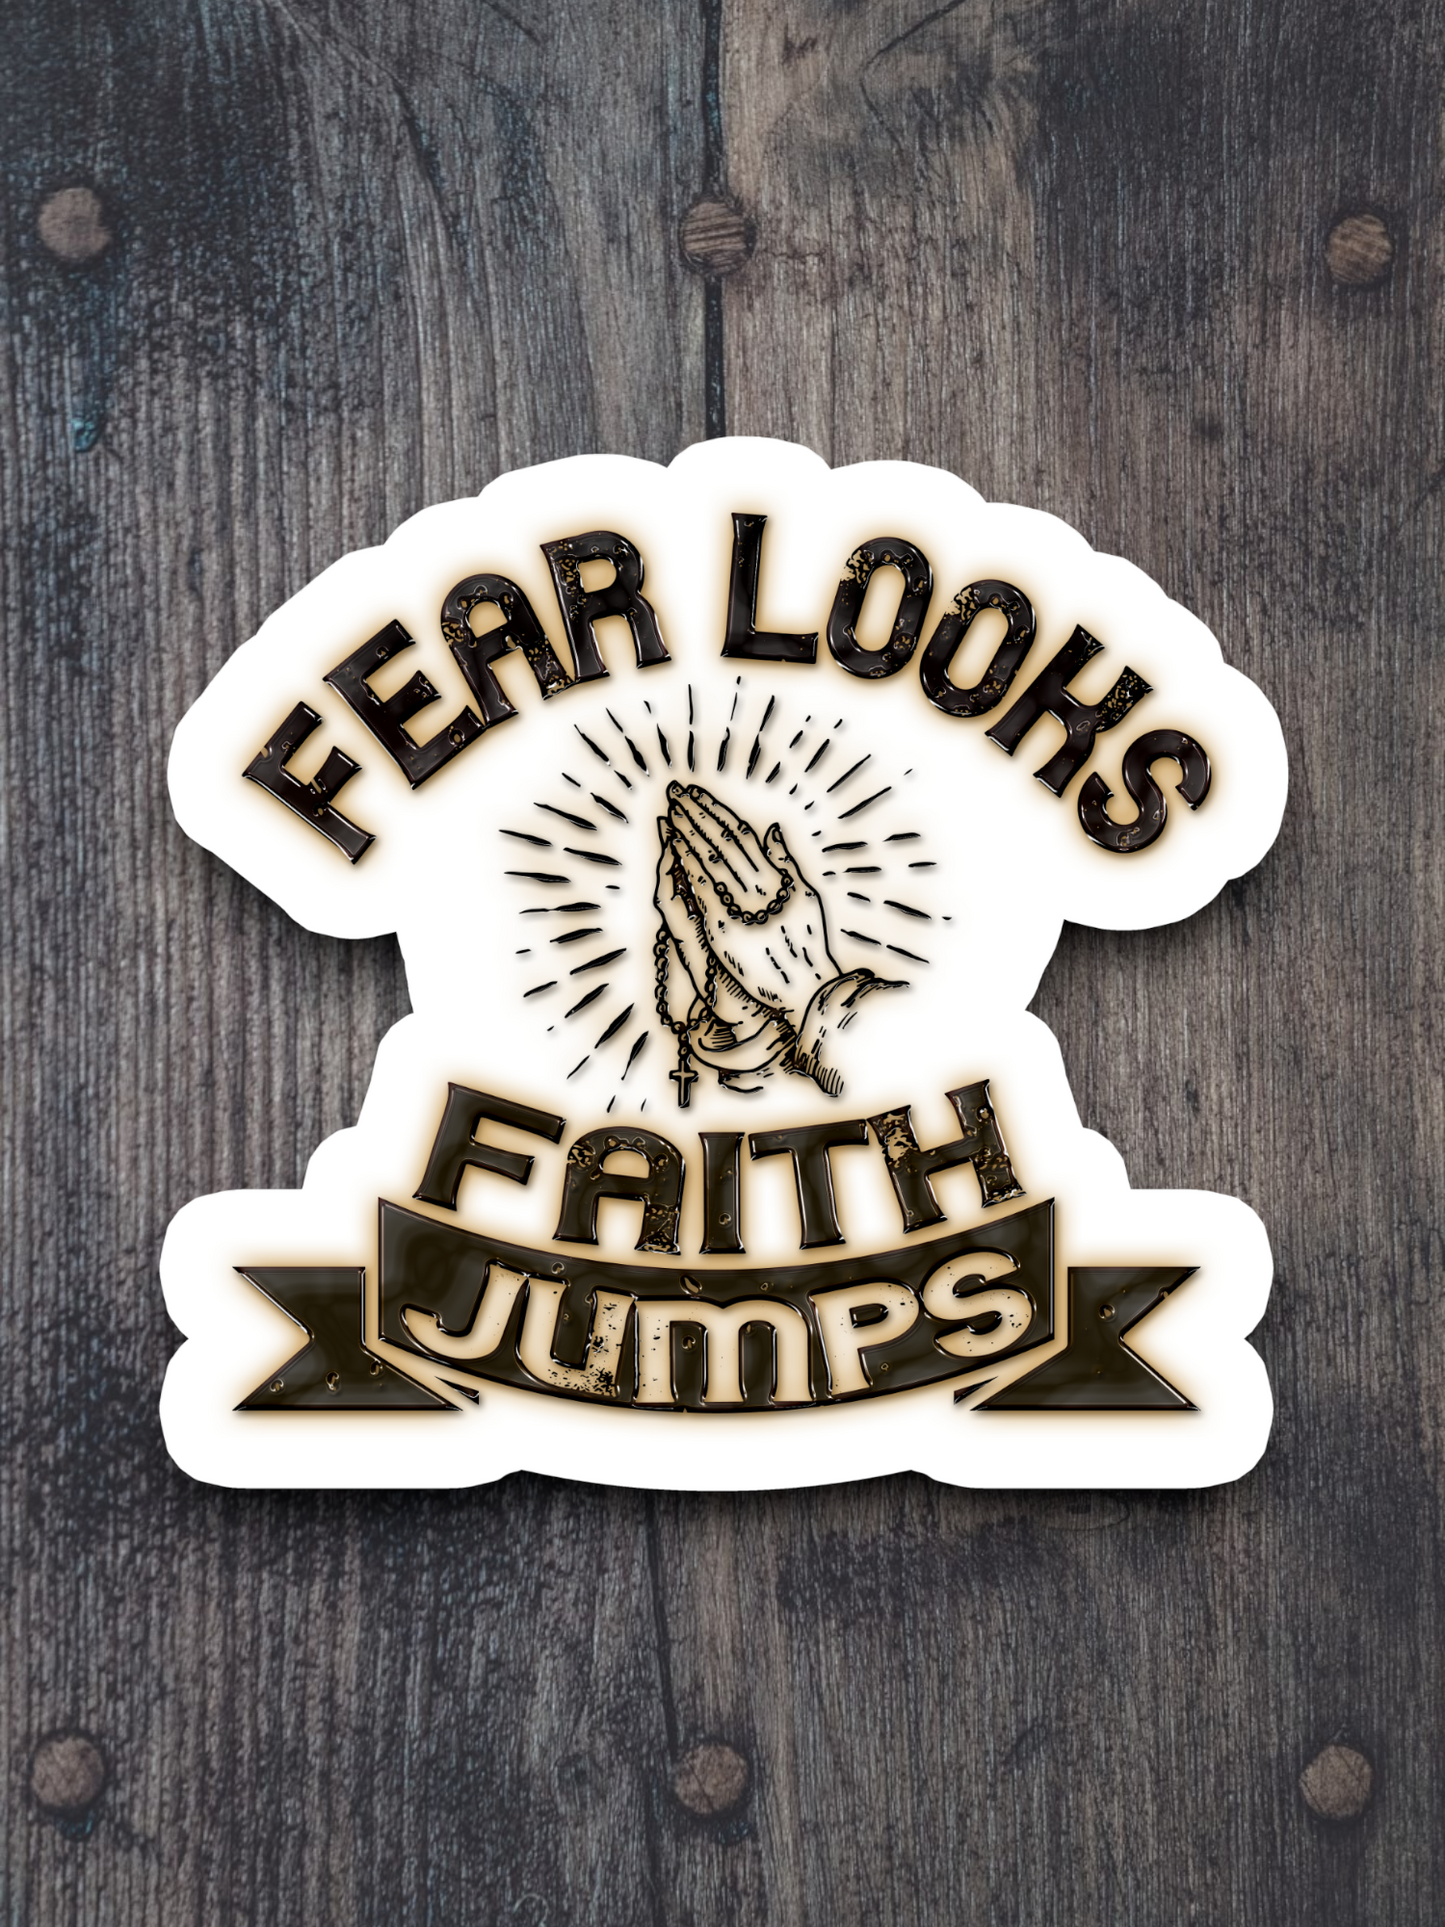 Fear Looks Faith Jumps - Faith Sticker